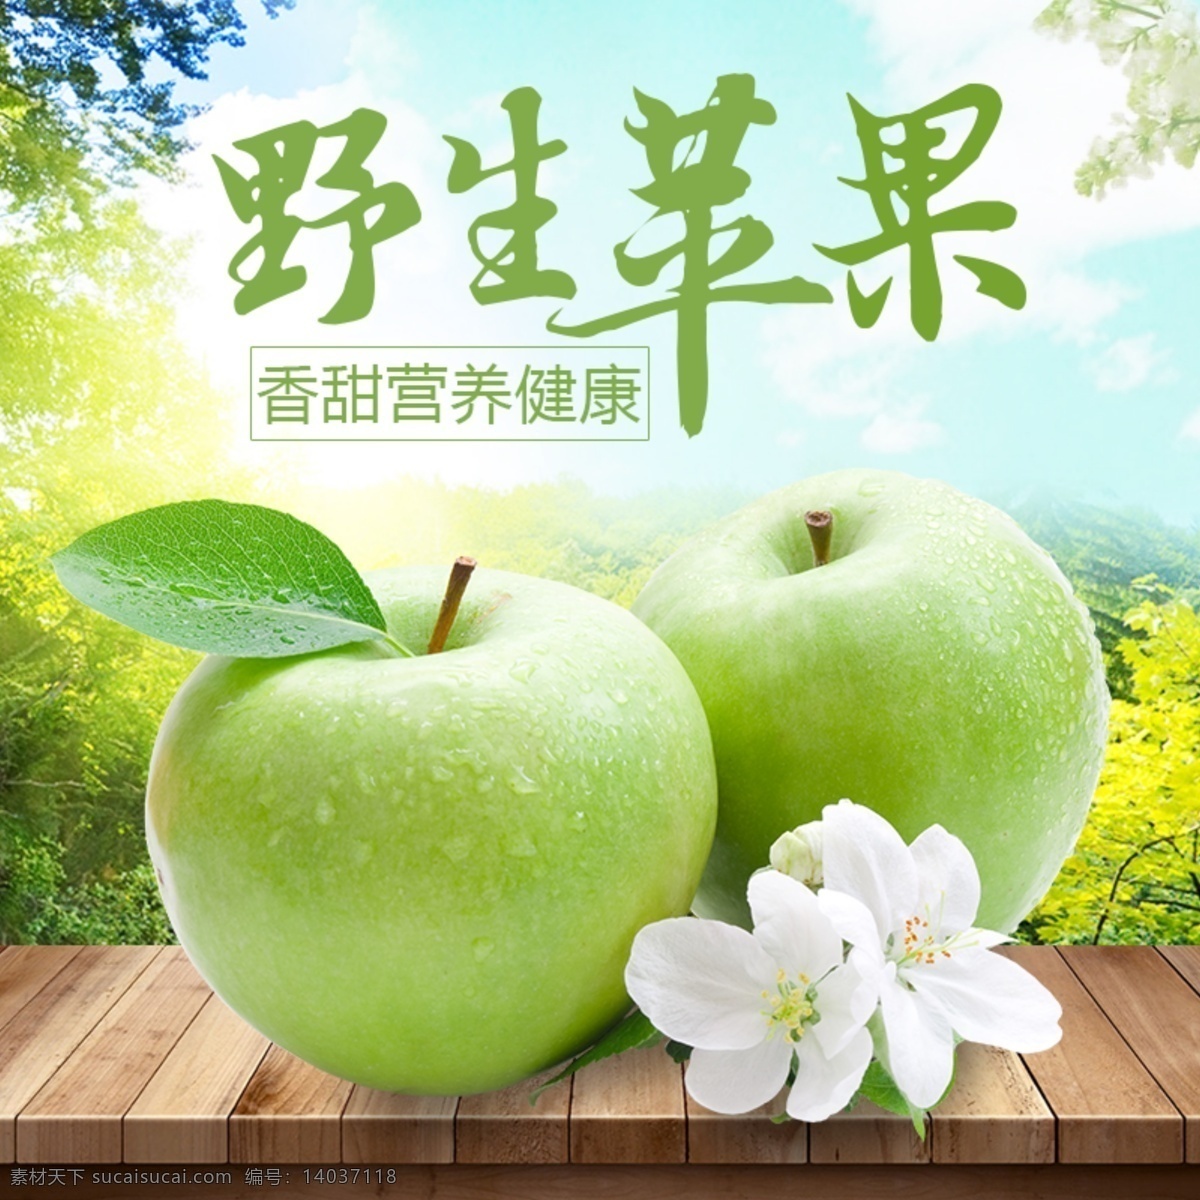 淘宝 绿色 新鲜 水果 苹果 高清 主 图 直通车 背景 主图